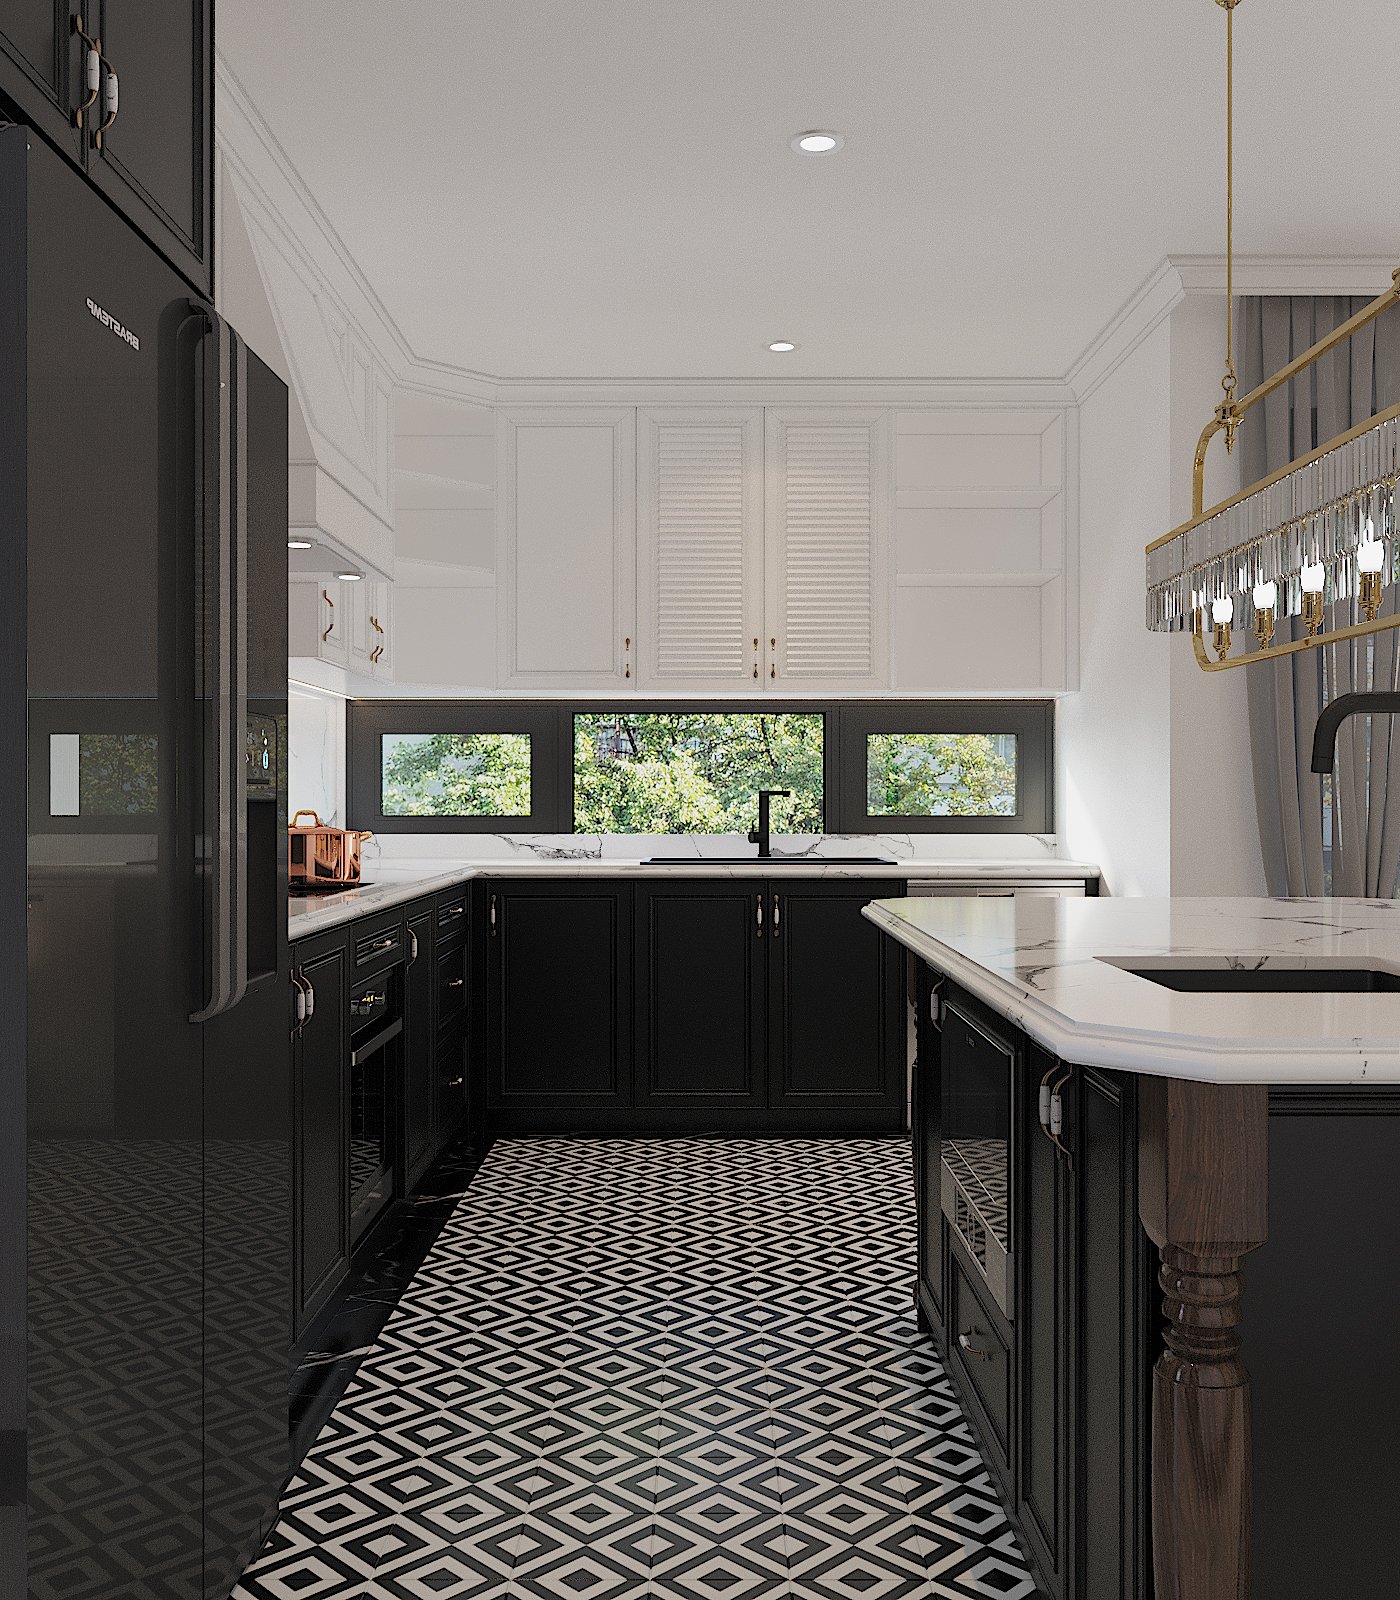 Phòng bếp thiết kế với hai tông màu đen - trắng cổ điển, được cân bằng bởi hệ tủ bếp trên và dưới. Những ô cửa kính trong suốt tạo độ thoáng sáng cho căn phòng.